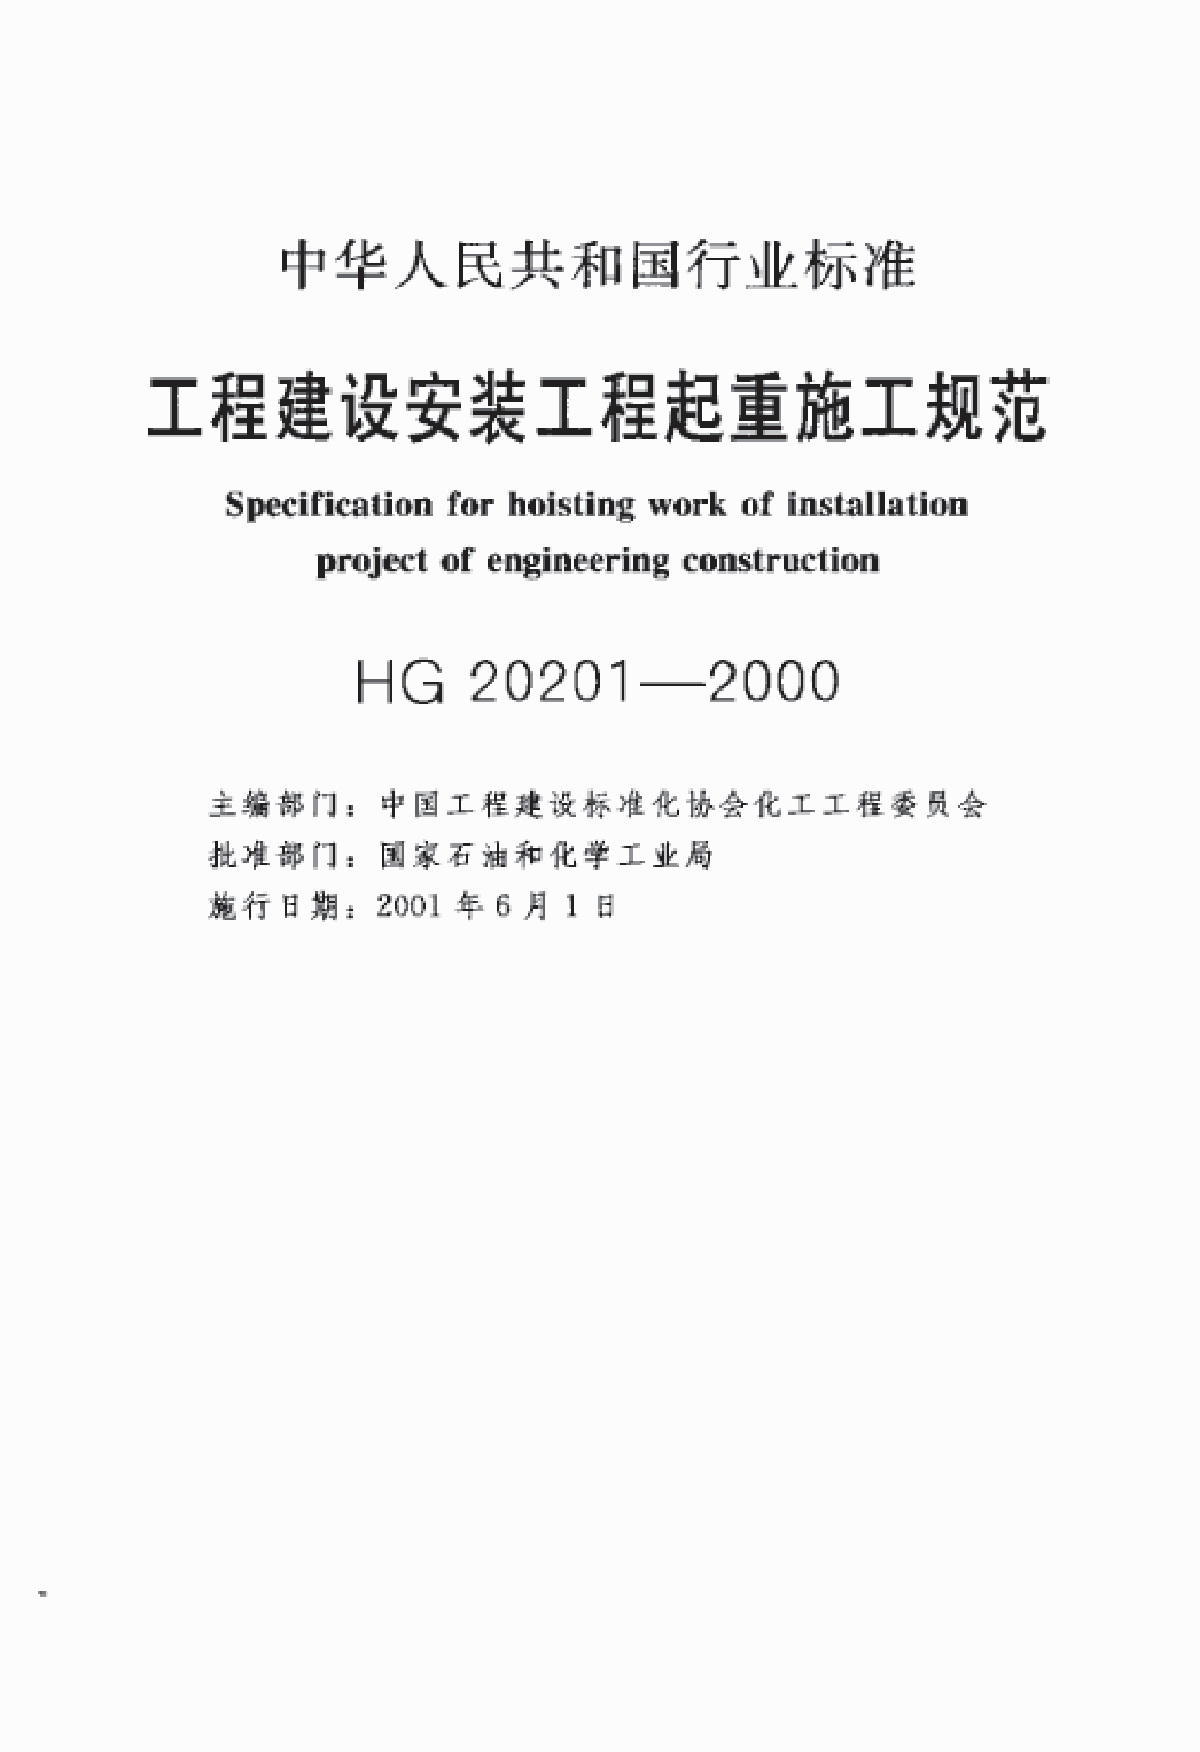 HG 20201-2000工程建设安装工程起重施工规范-图二